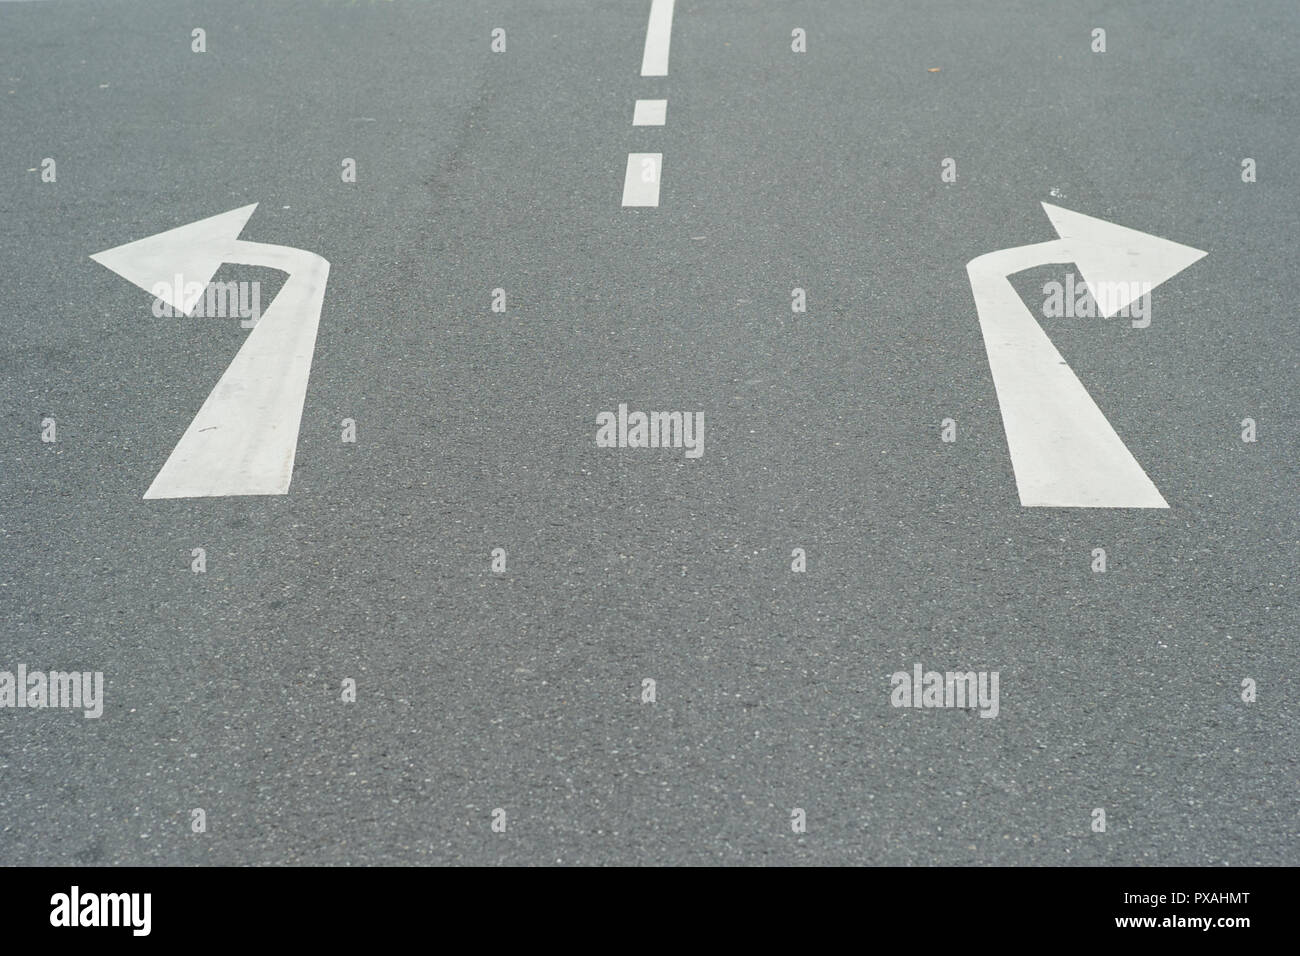 Pfeile nach rechts und nach links auf eine asphaltierte Straße - ein Konzept für Entscheidungen - Durch Drehen nach Links oder Rechts Stockfoto